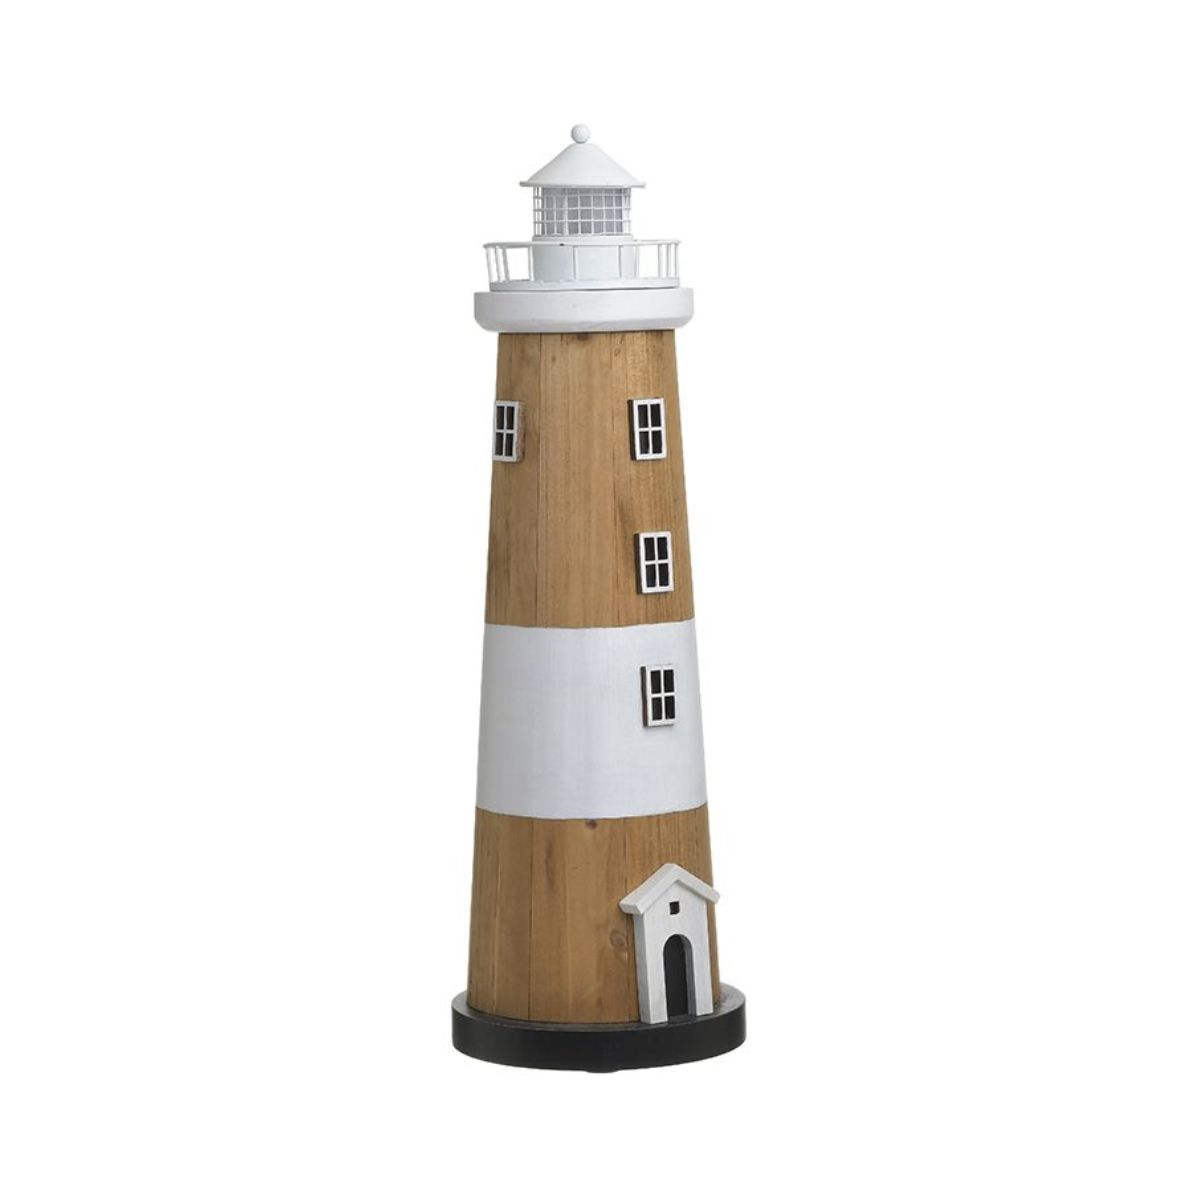 Decoratiuni de interior - Felinar din lemn si metal, cu LED, Ø15Χ46 cm Lighthouse Inart, hectarul.ro